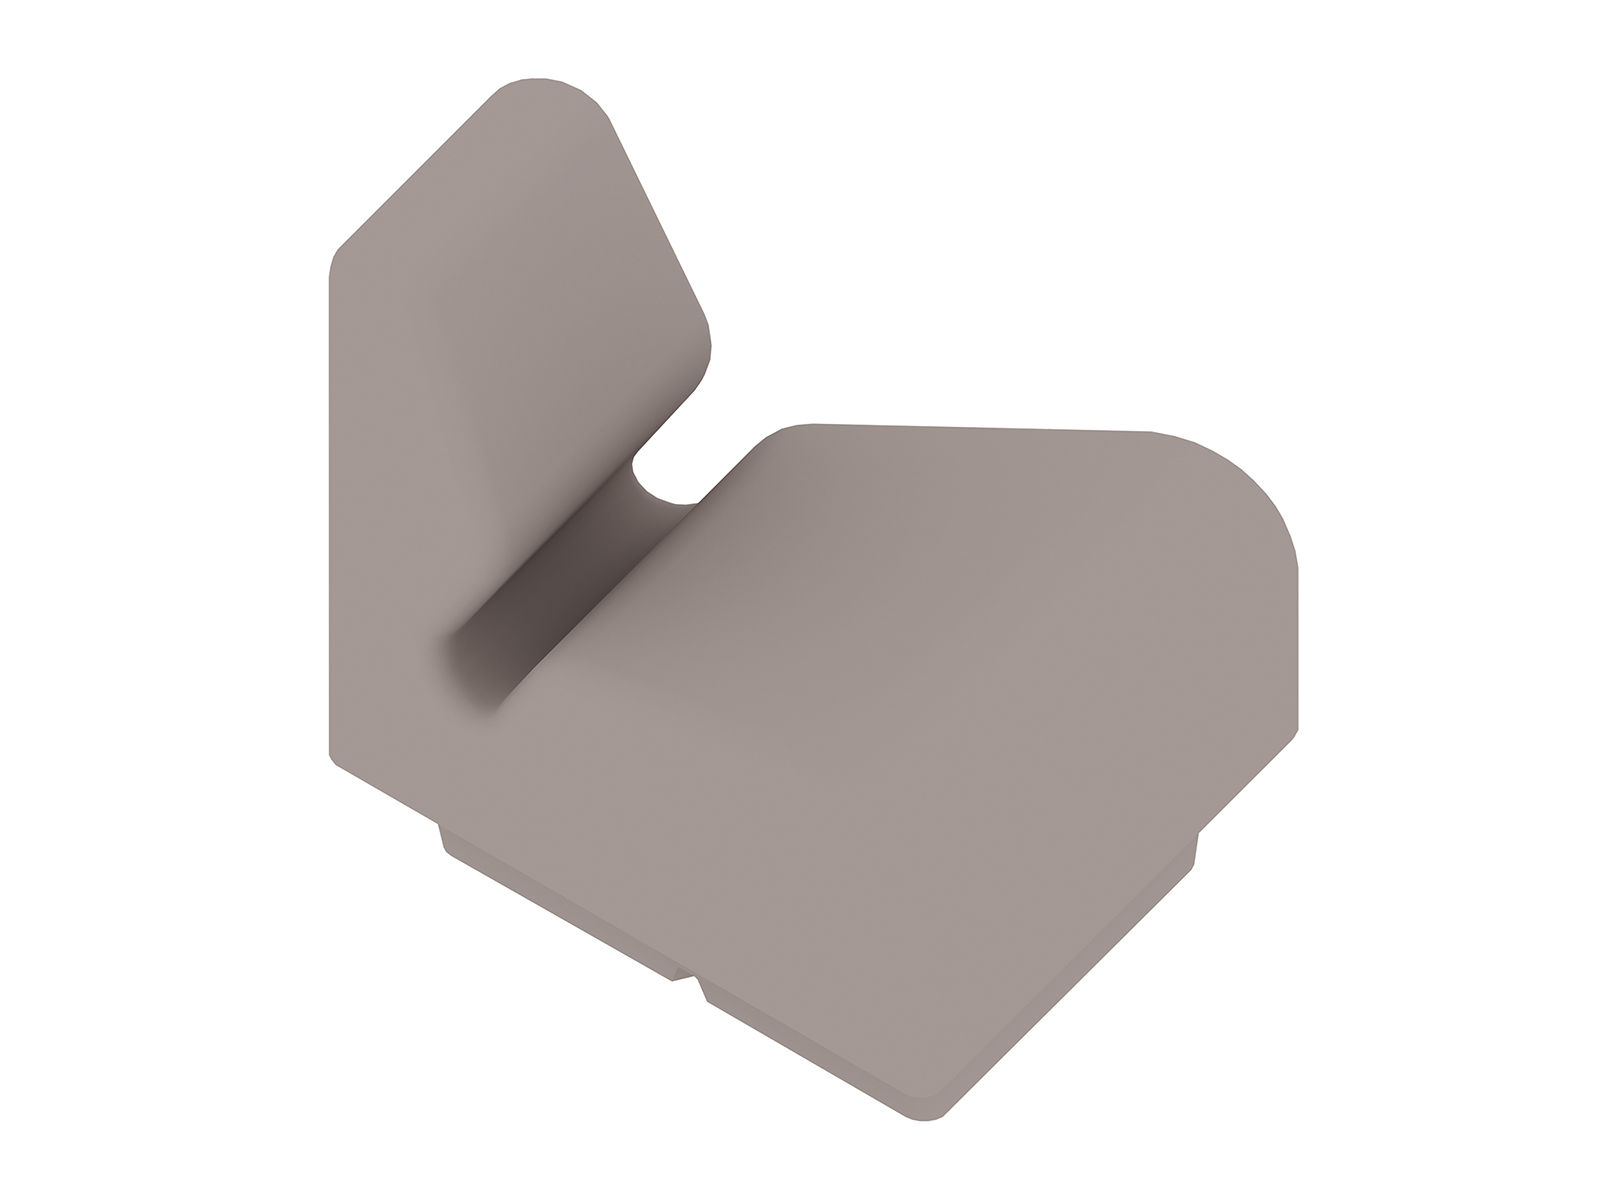 Un rendering generico - Seduta modulare Chadwick - incastro esterno - 30 gradi